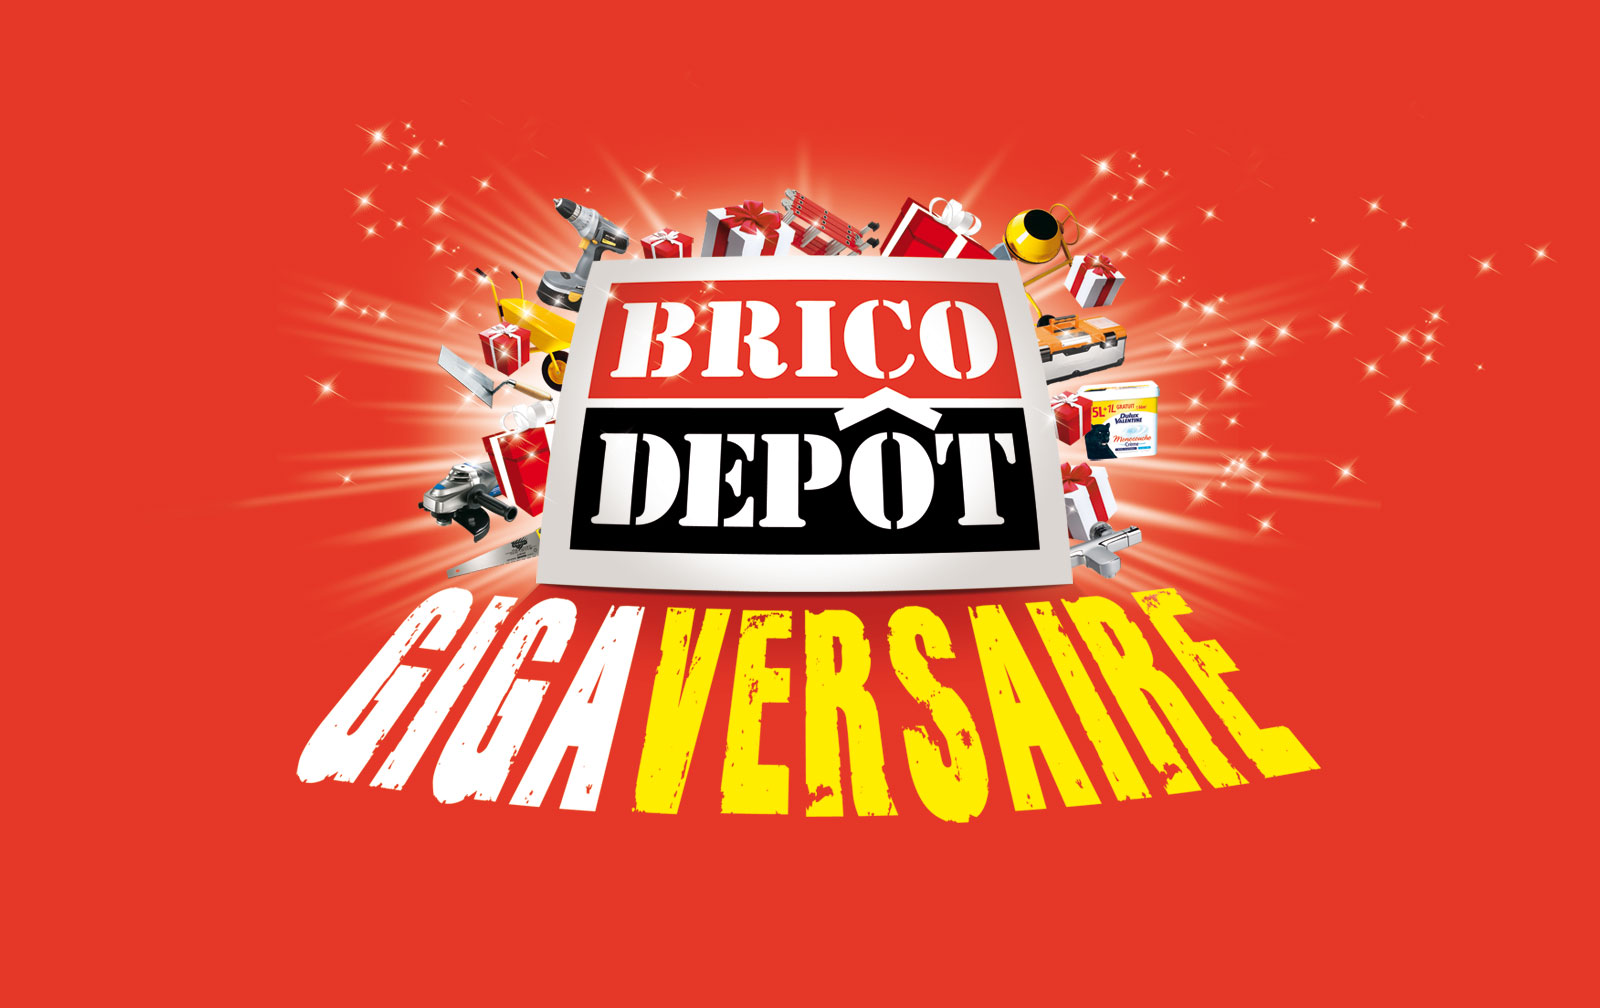 Visuel couverture catalogue promotionnel pour Brico Dépot